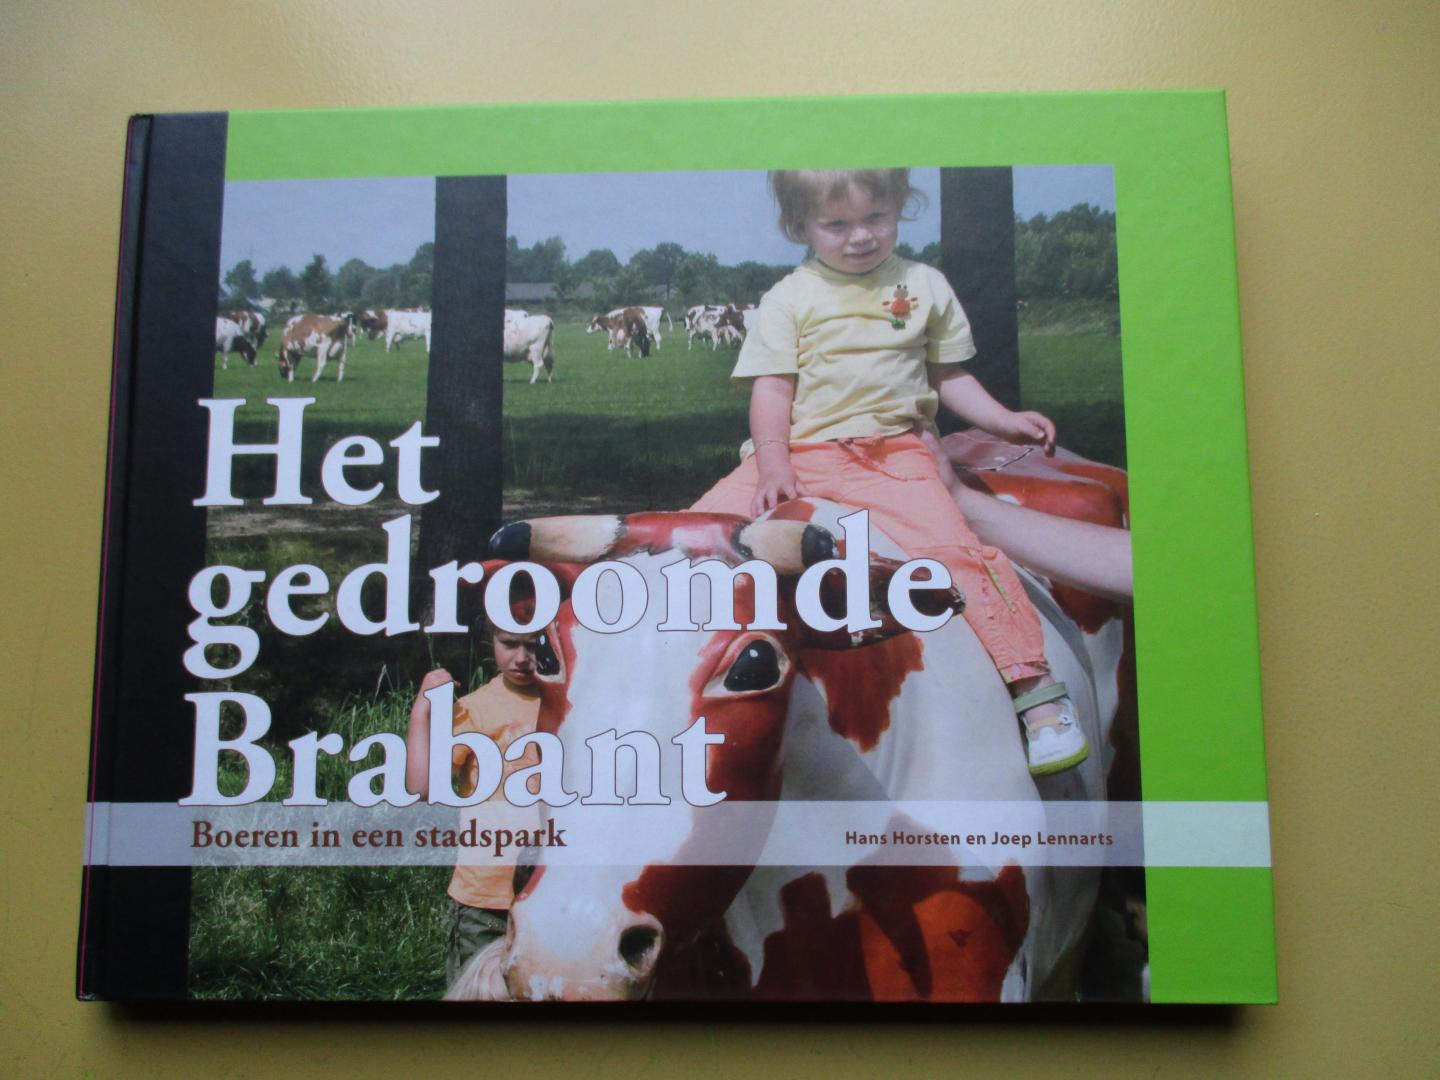 Horsten, Hans en Lennarts, Joep - Het gedroomde Brabant - Boeren in een stadspark